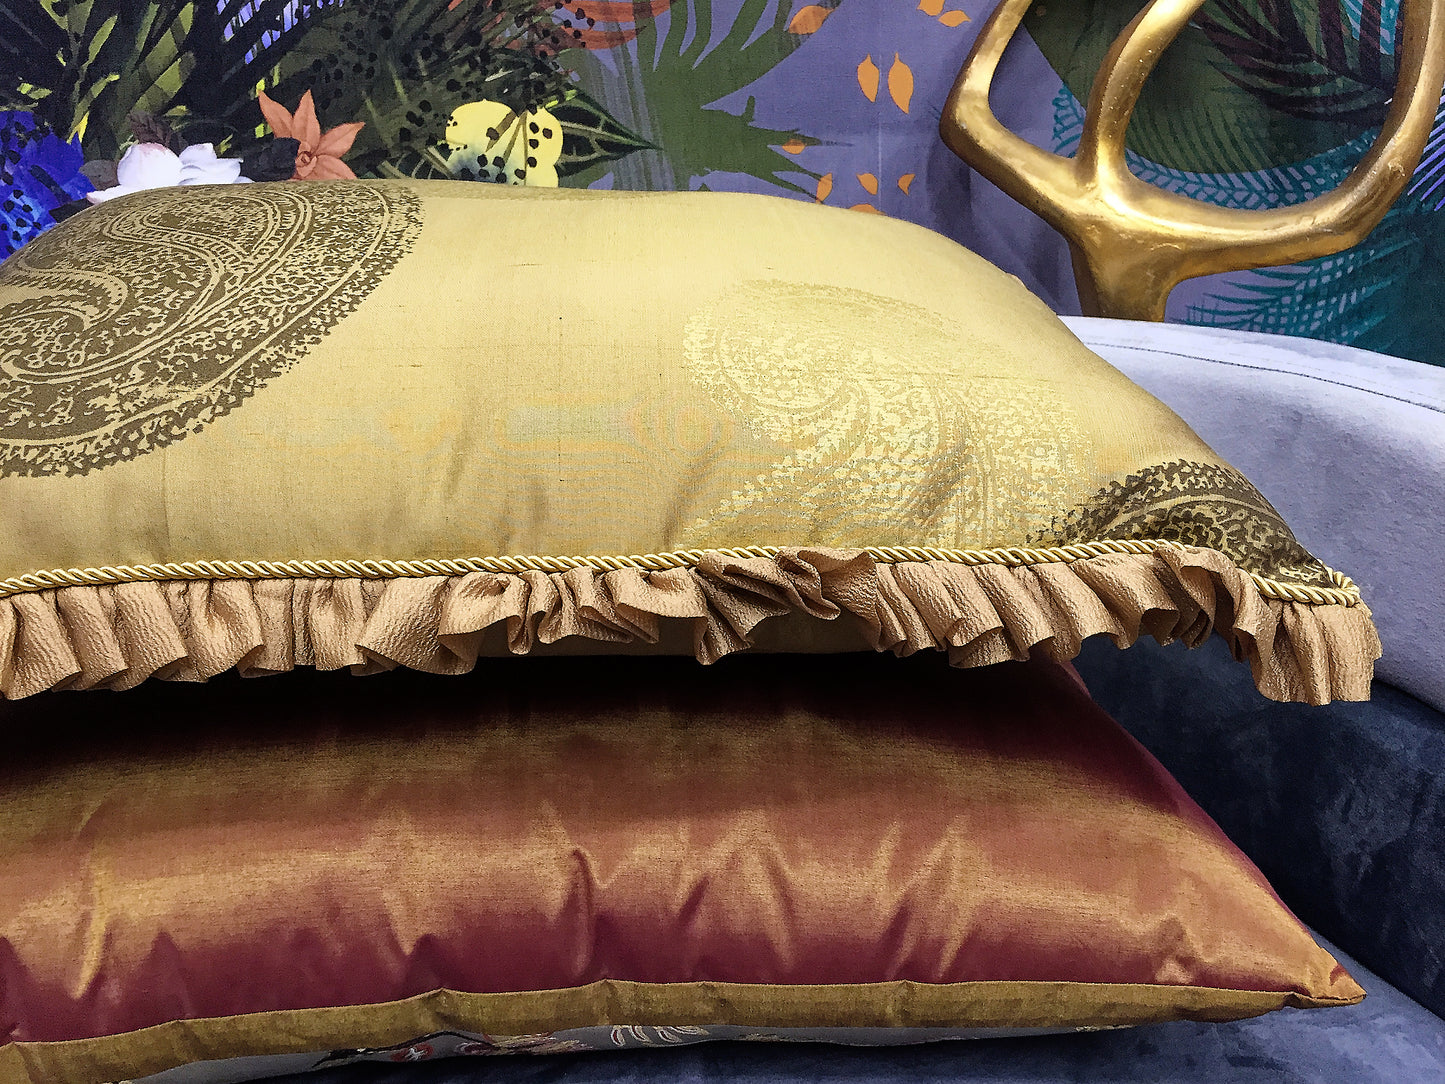 Luxury cushion "Golden Paisley"